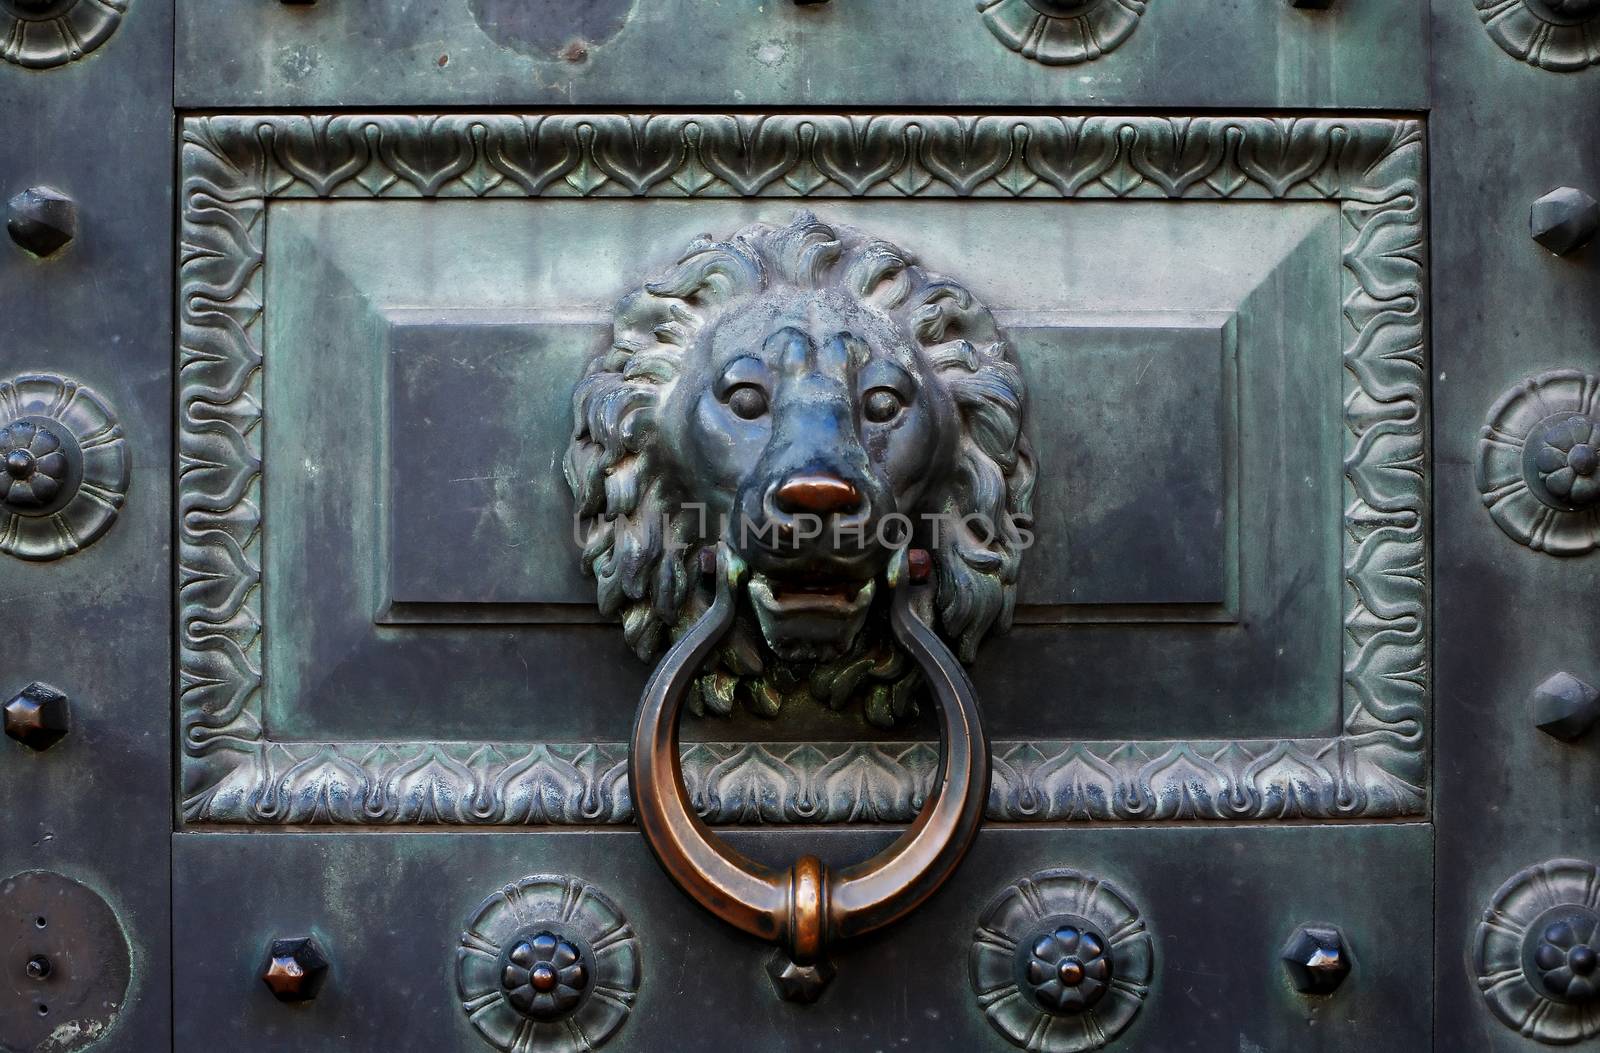 Nice ancient metal door with doorknob as lion head